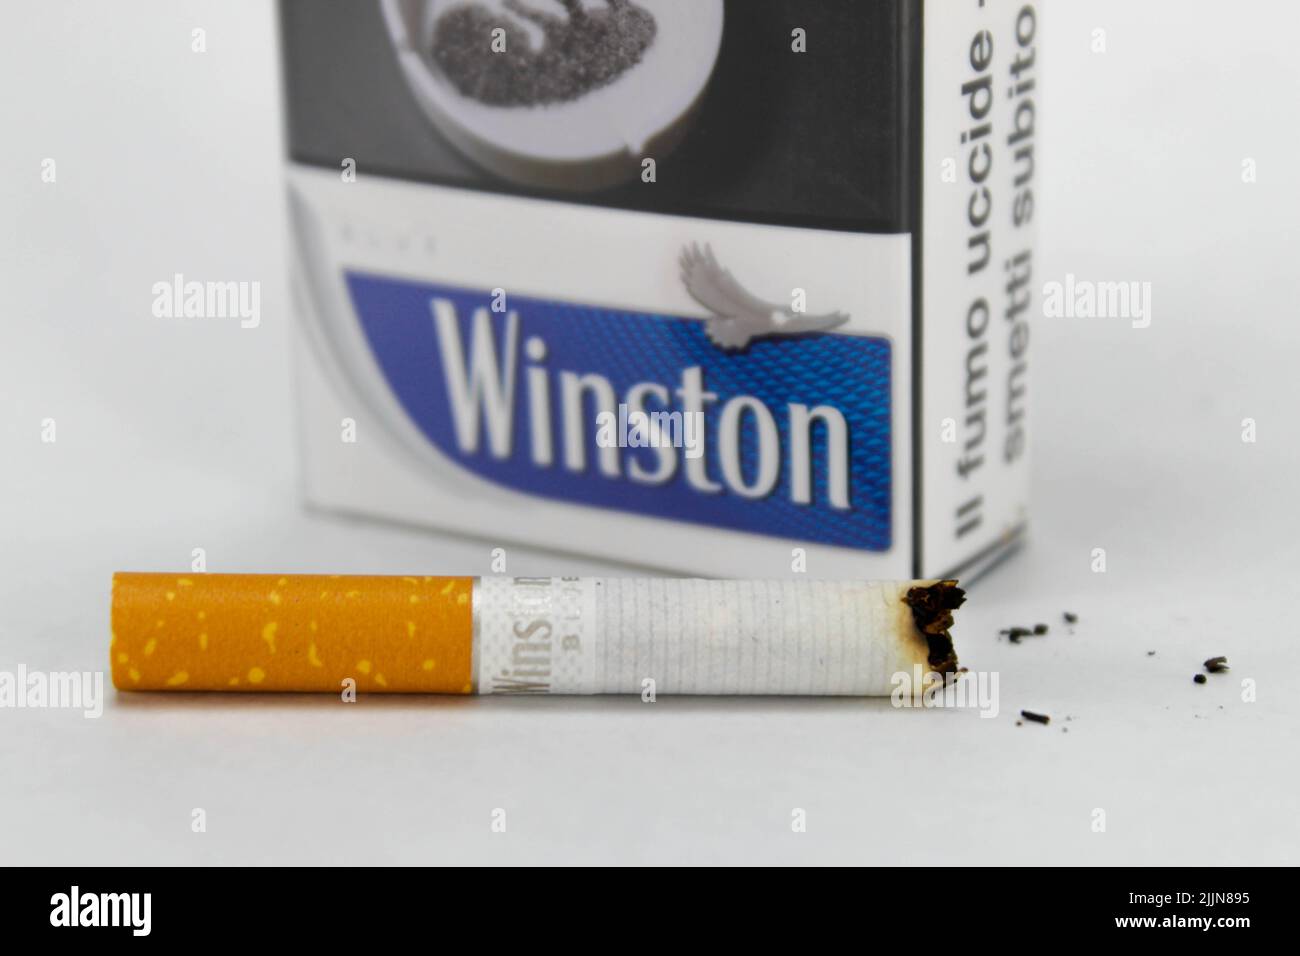 Eine Nahaufnahme einer Packung Winston Zigarette mit einer halb verbrannten Zigarette auf der weißen Oberfläche Stockfoto